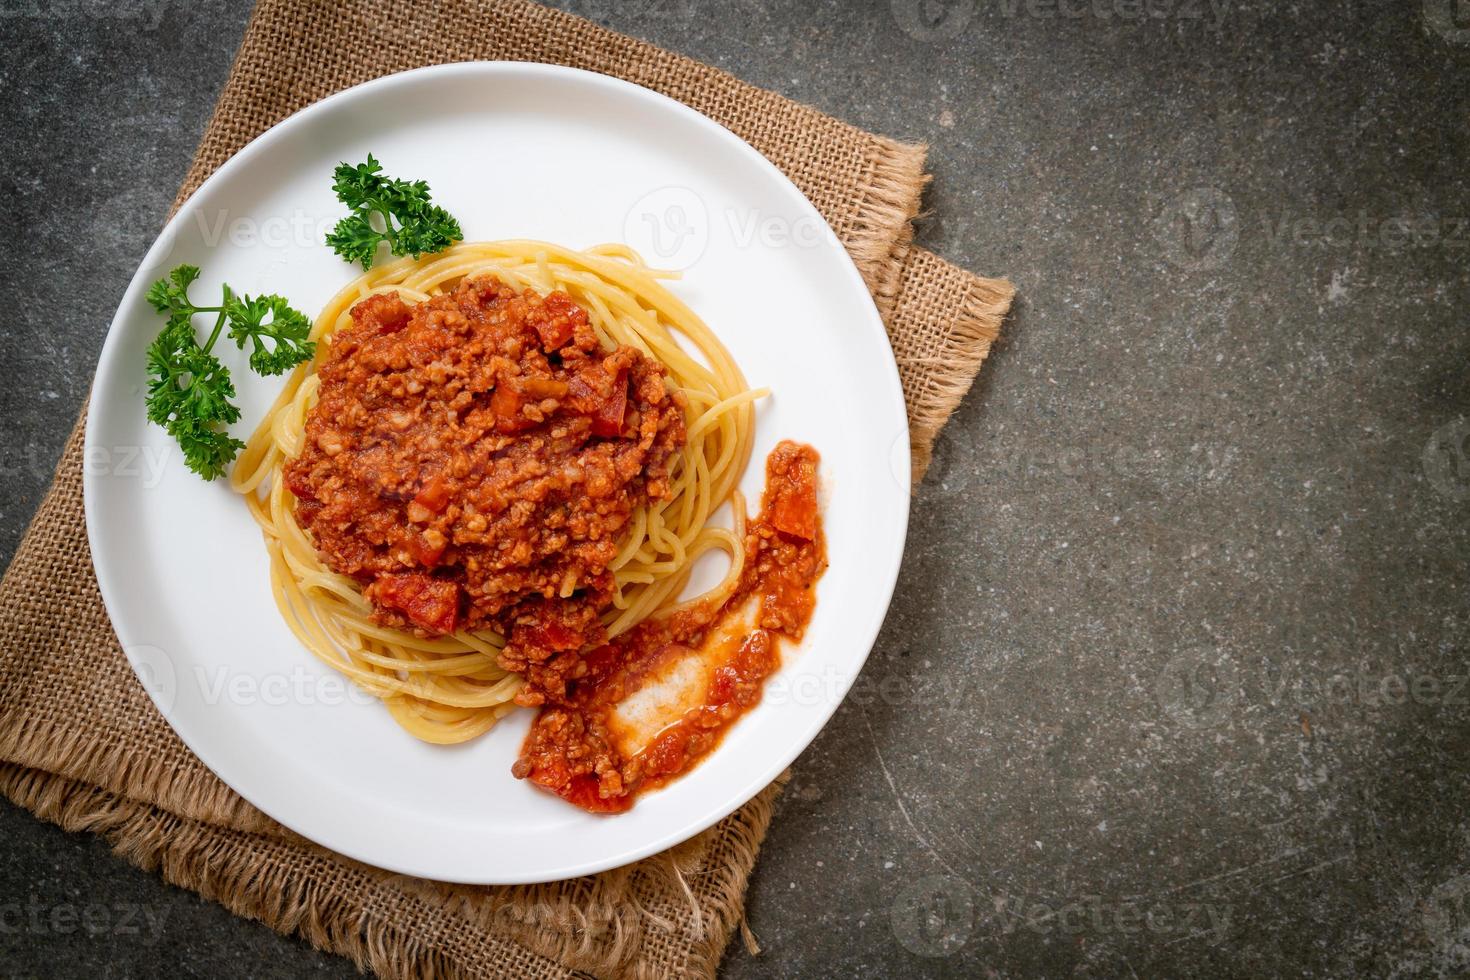 Spaghetti Bolognese-Schweinefleisch oder Spaghetti mit Hackfleisch-Tomatensauce - italienische Küche food foto